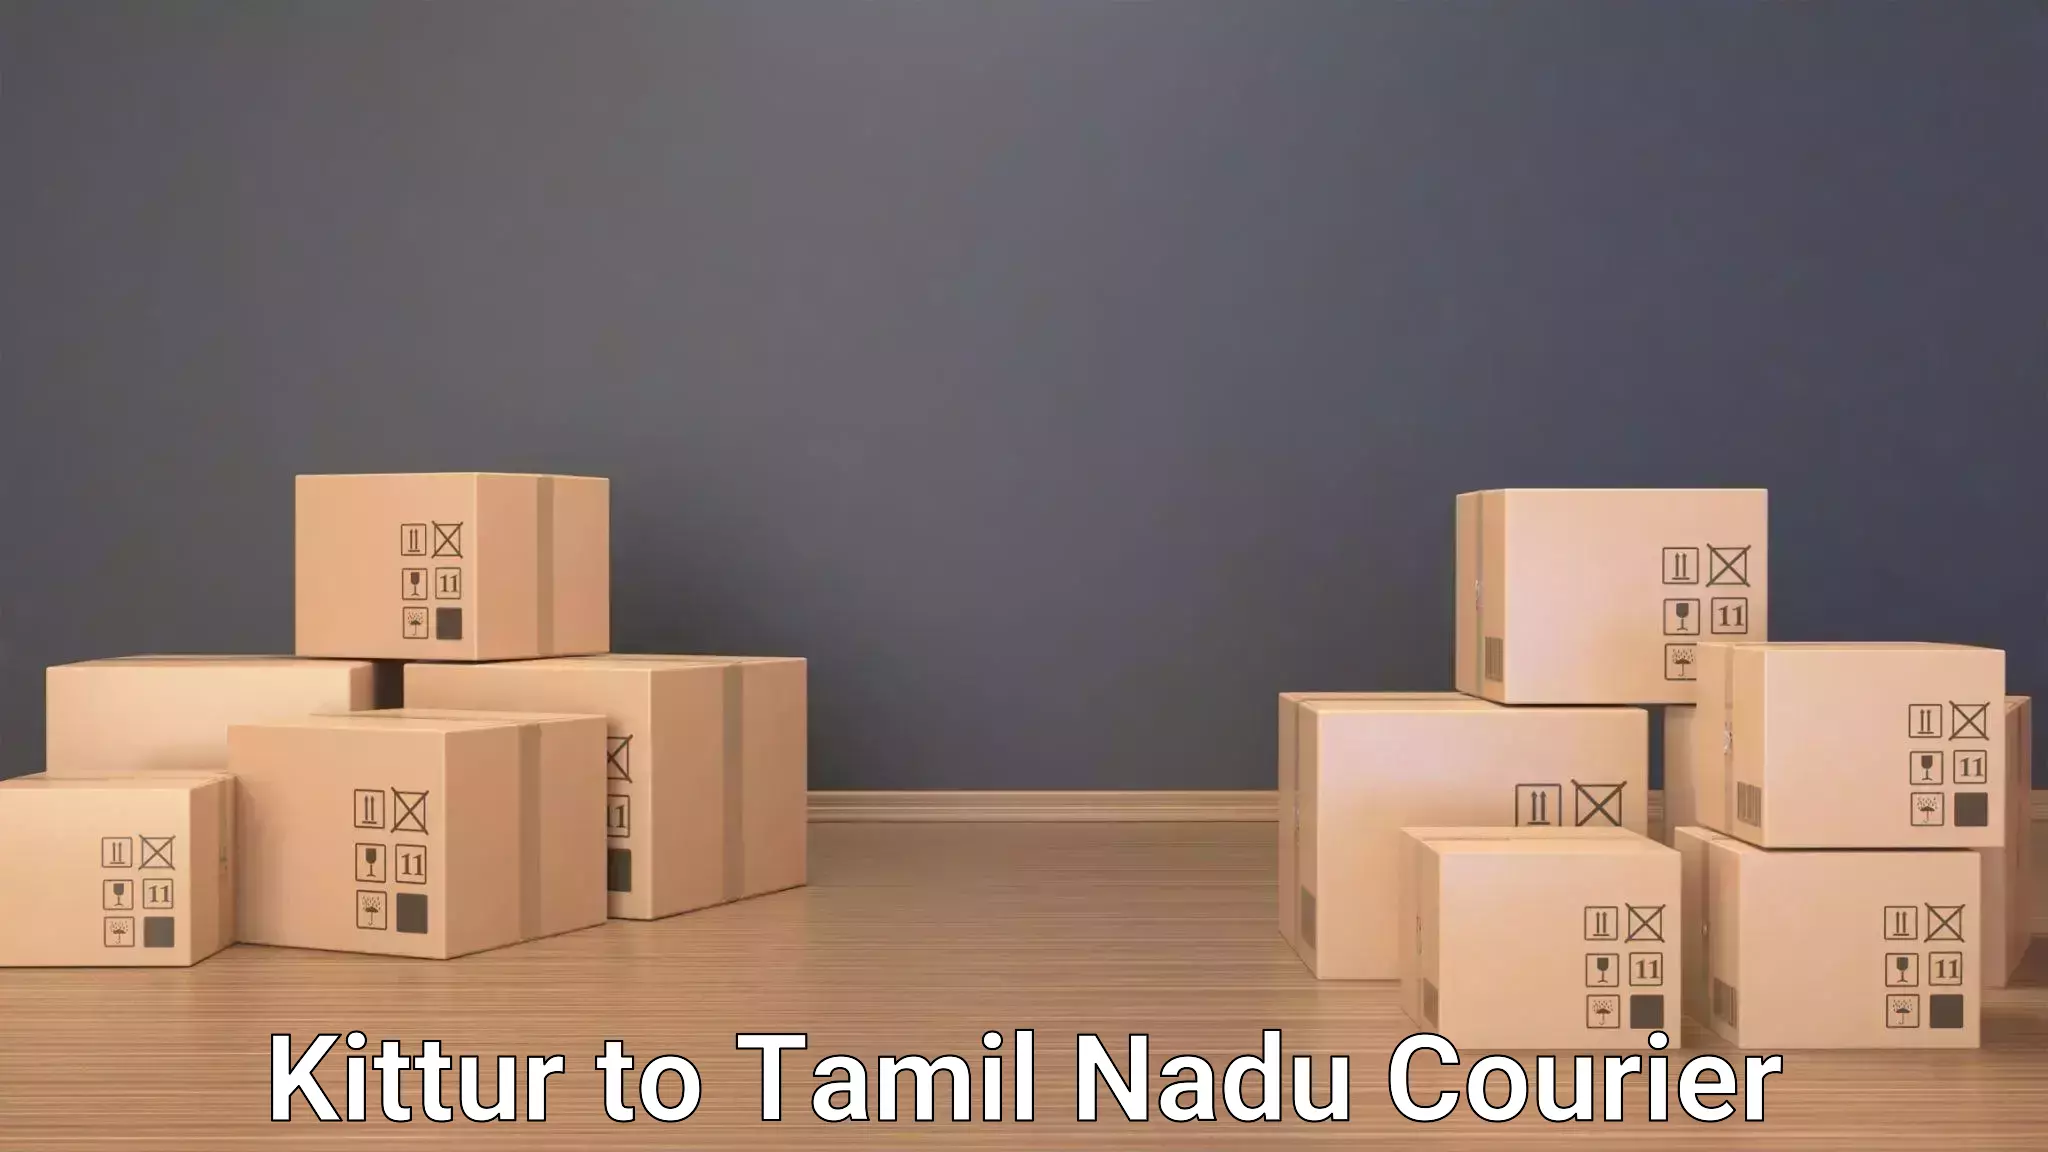 Urgent luggage shipment in Kittur to Tamil Nadu